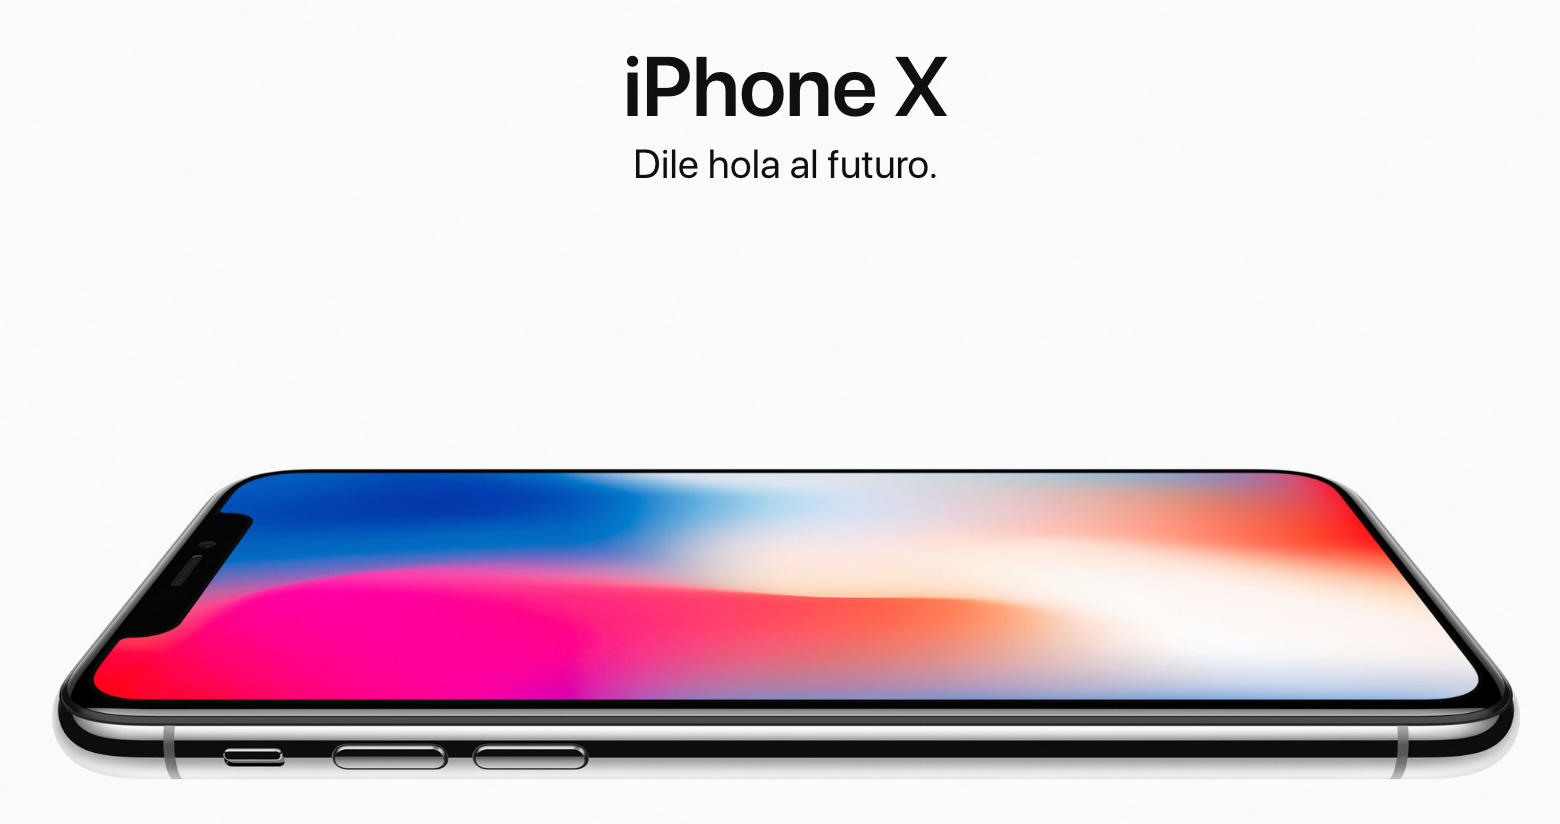 iPhone X: Dile Hola al Futuro